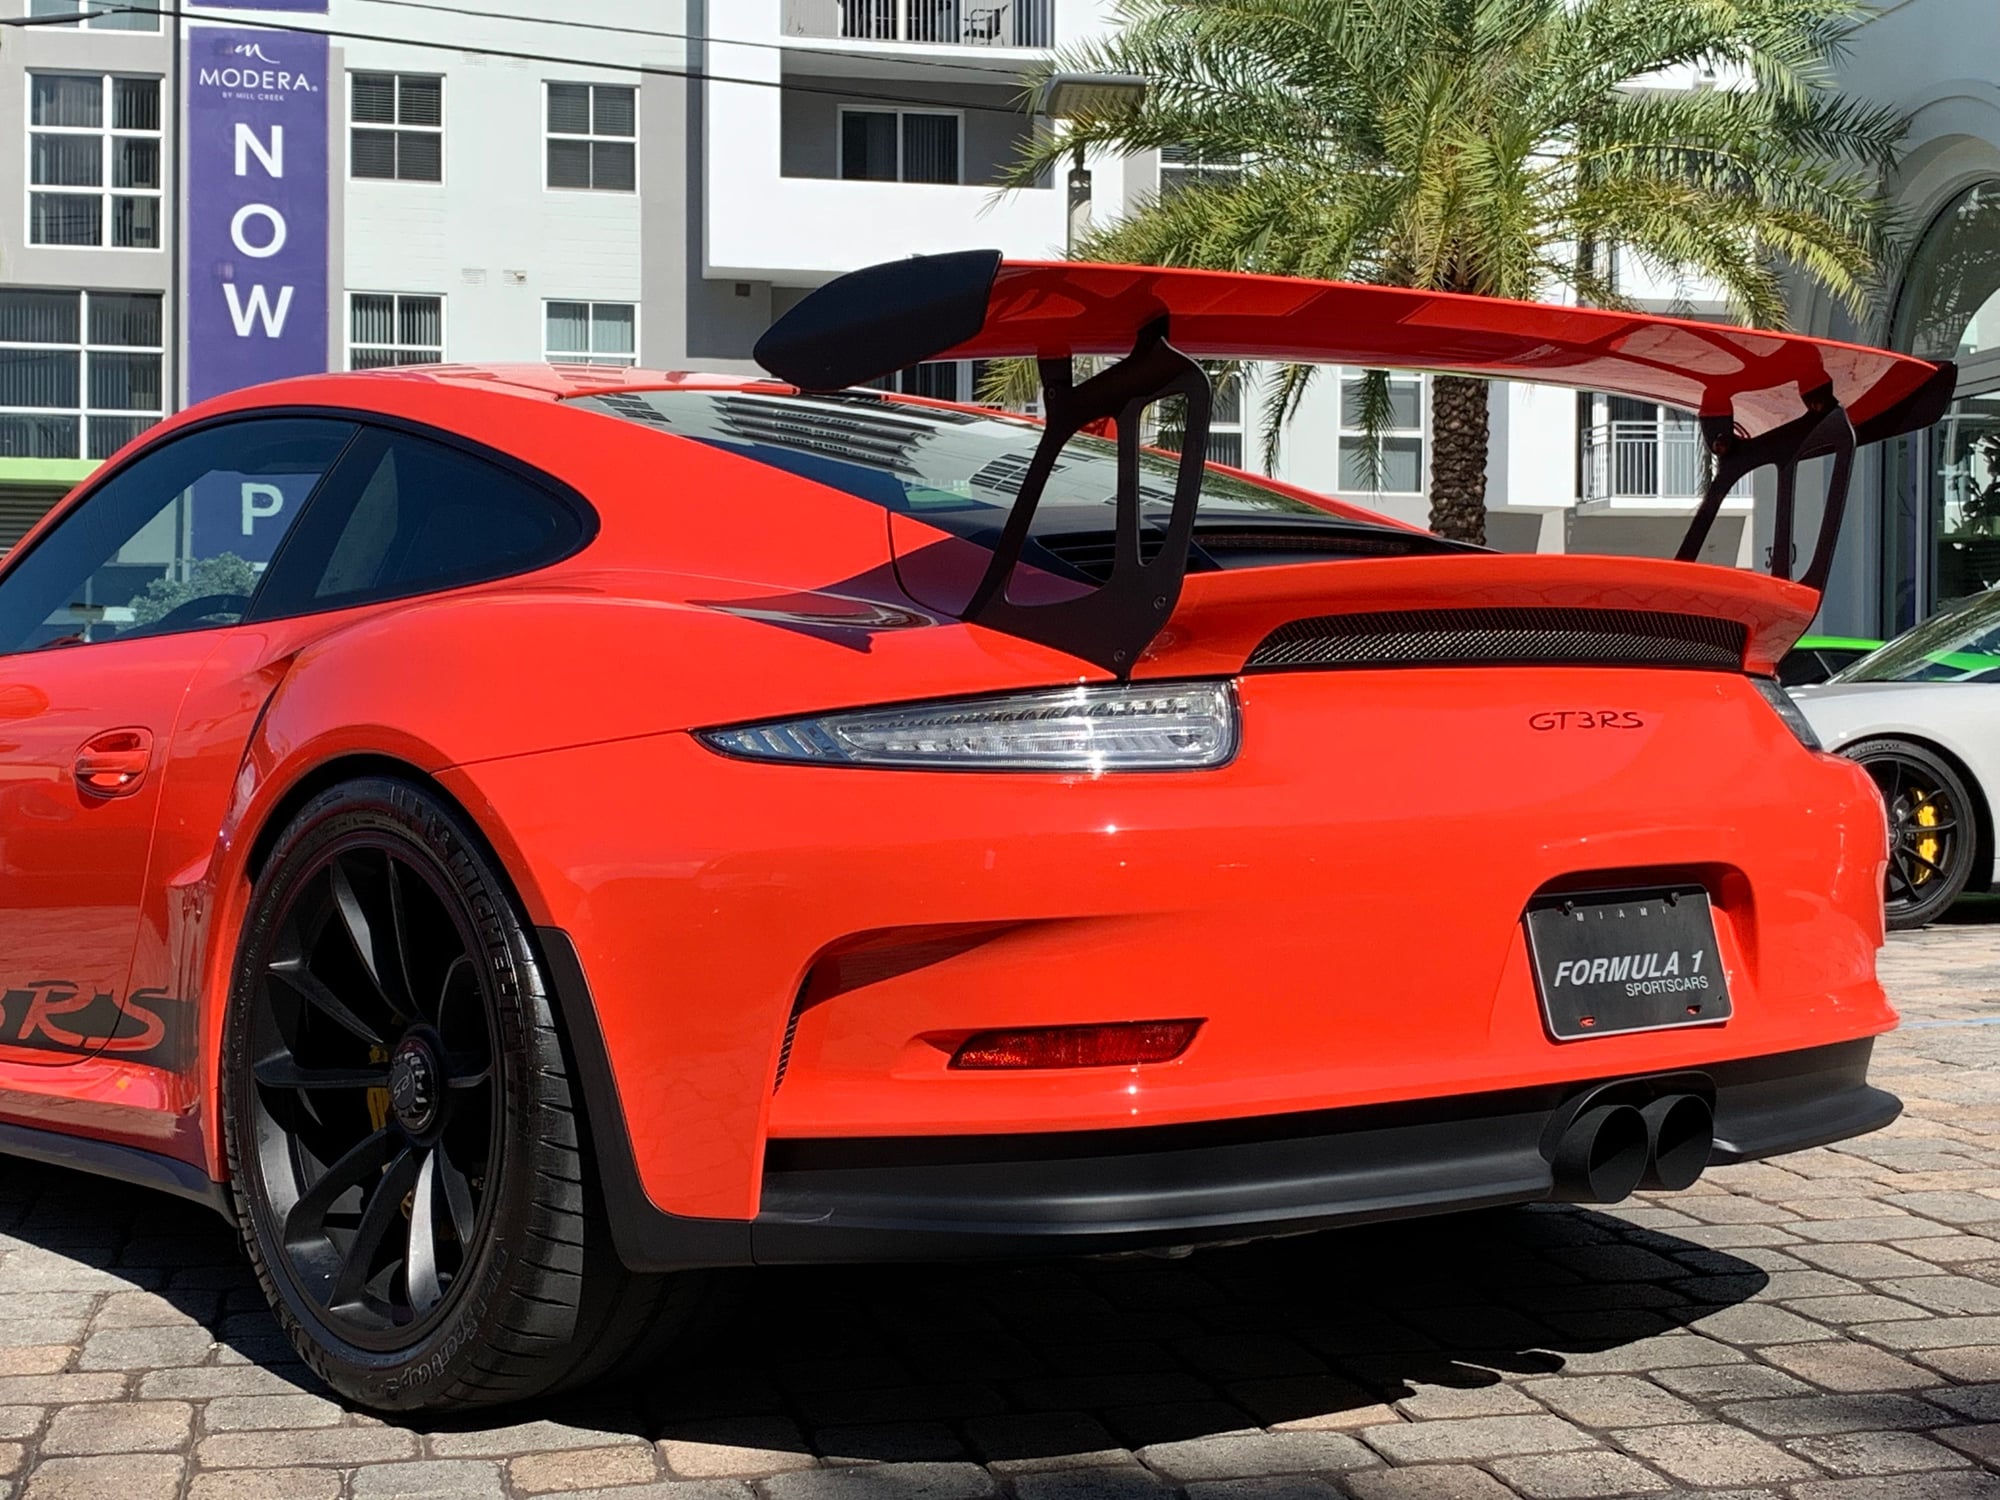 2016 Porsche GT3 - 2016 Lava Orange Porsche 911 GT3RS - Used - VIN WP0AF2A96GS192390 - 820 Miles - 6 cyl - 2WD - Automatic - Coupe - Orange - Miami, FL 33146, United States